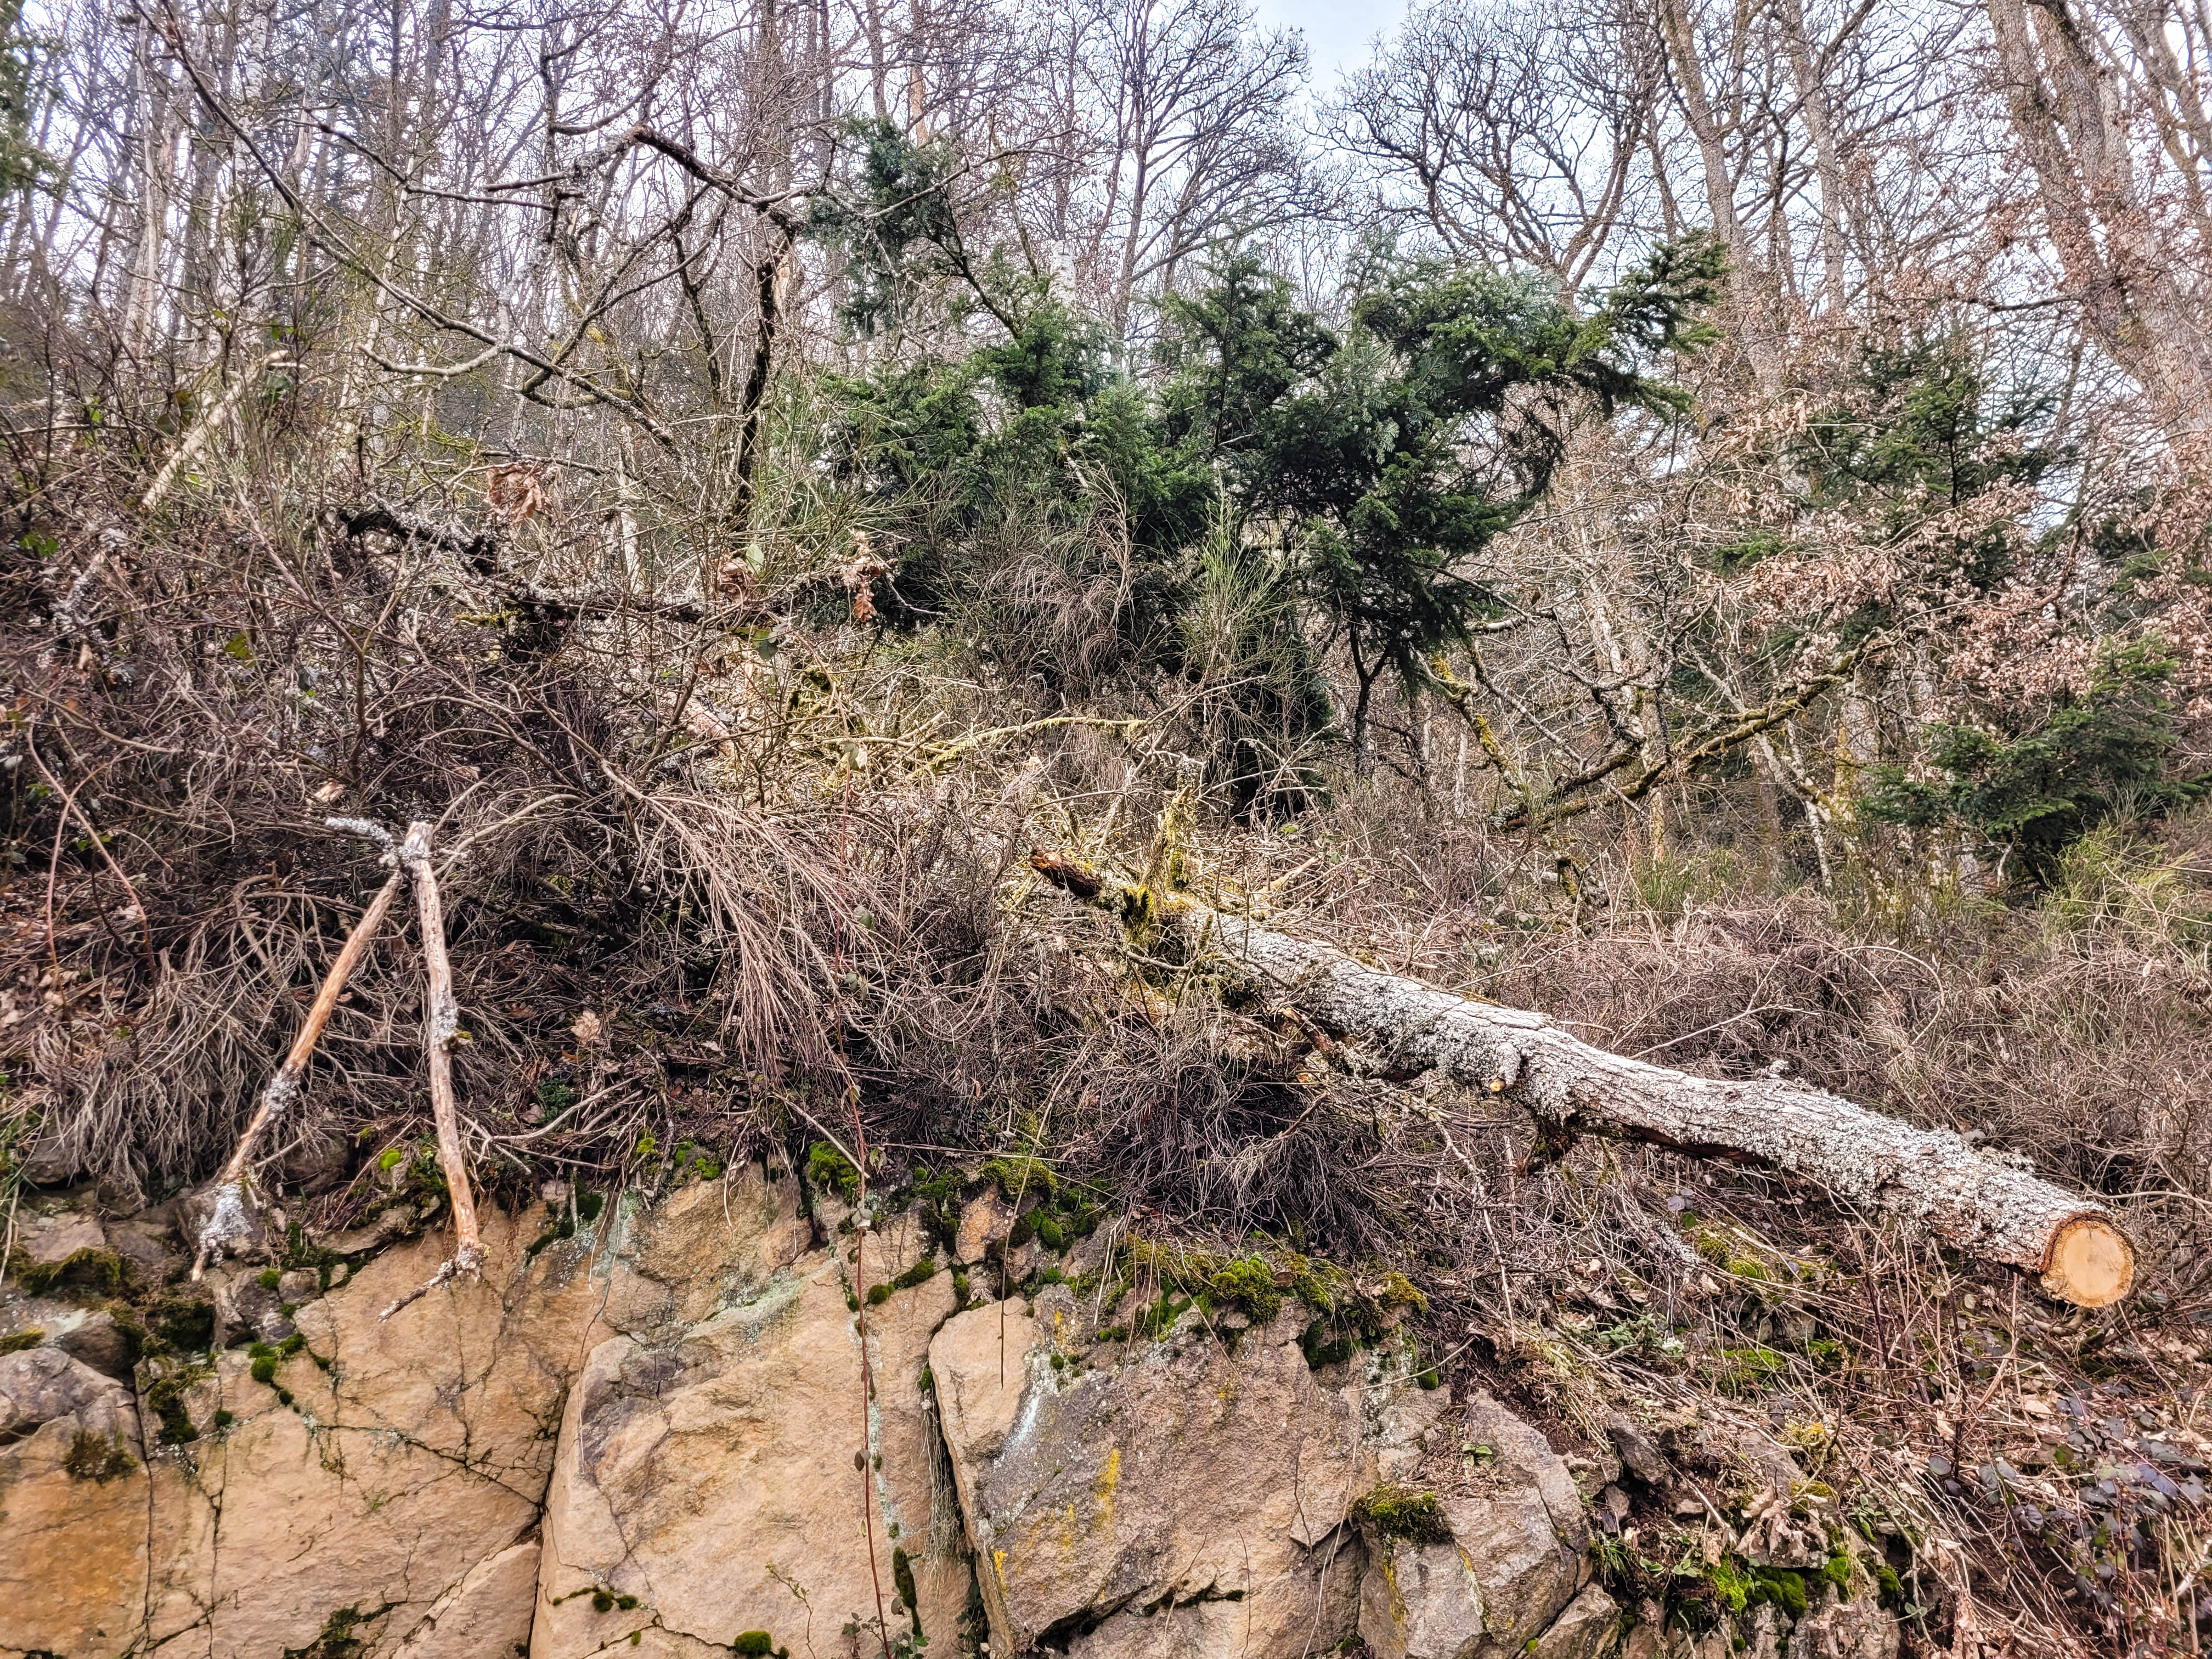 Photographie d'une forêt dense, dont le sol est couvert de branchages, de ronces et d'un arbre abattu